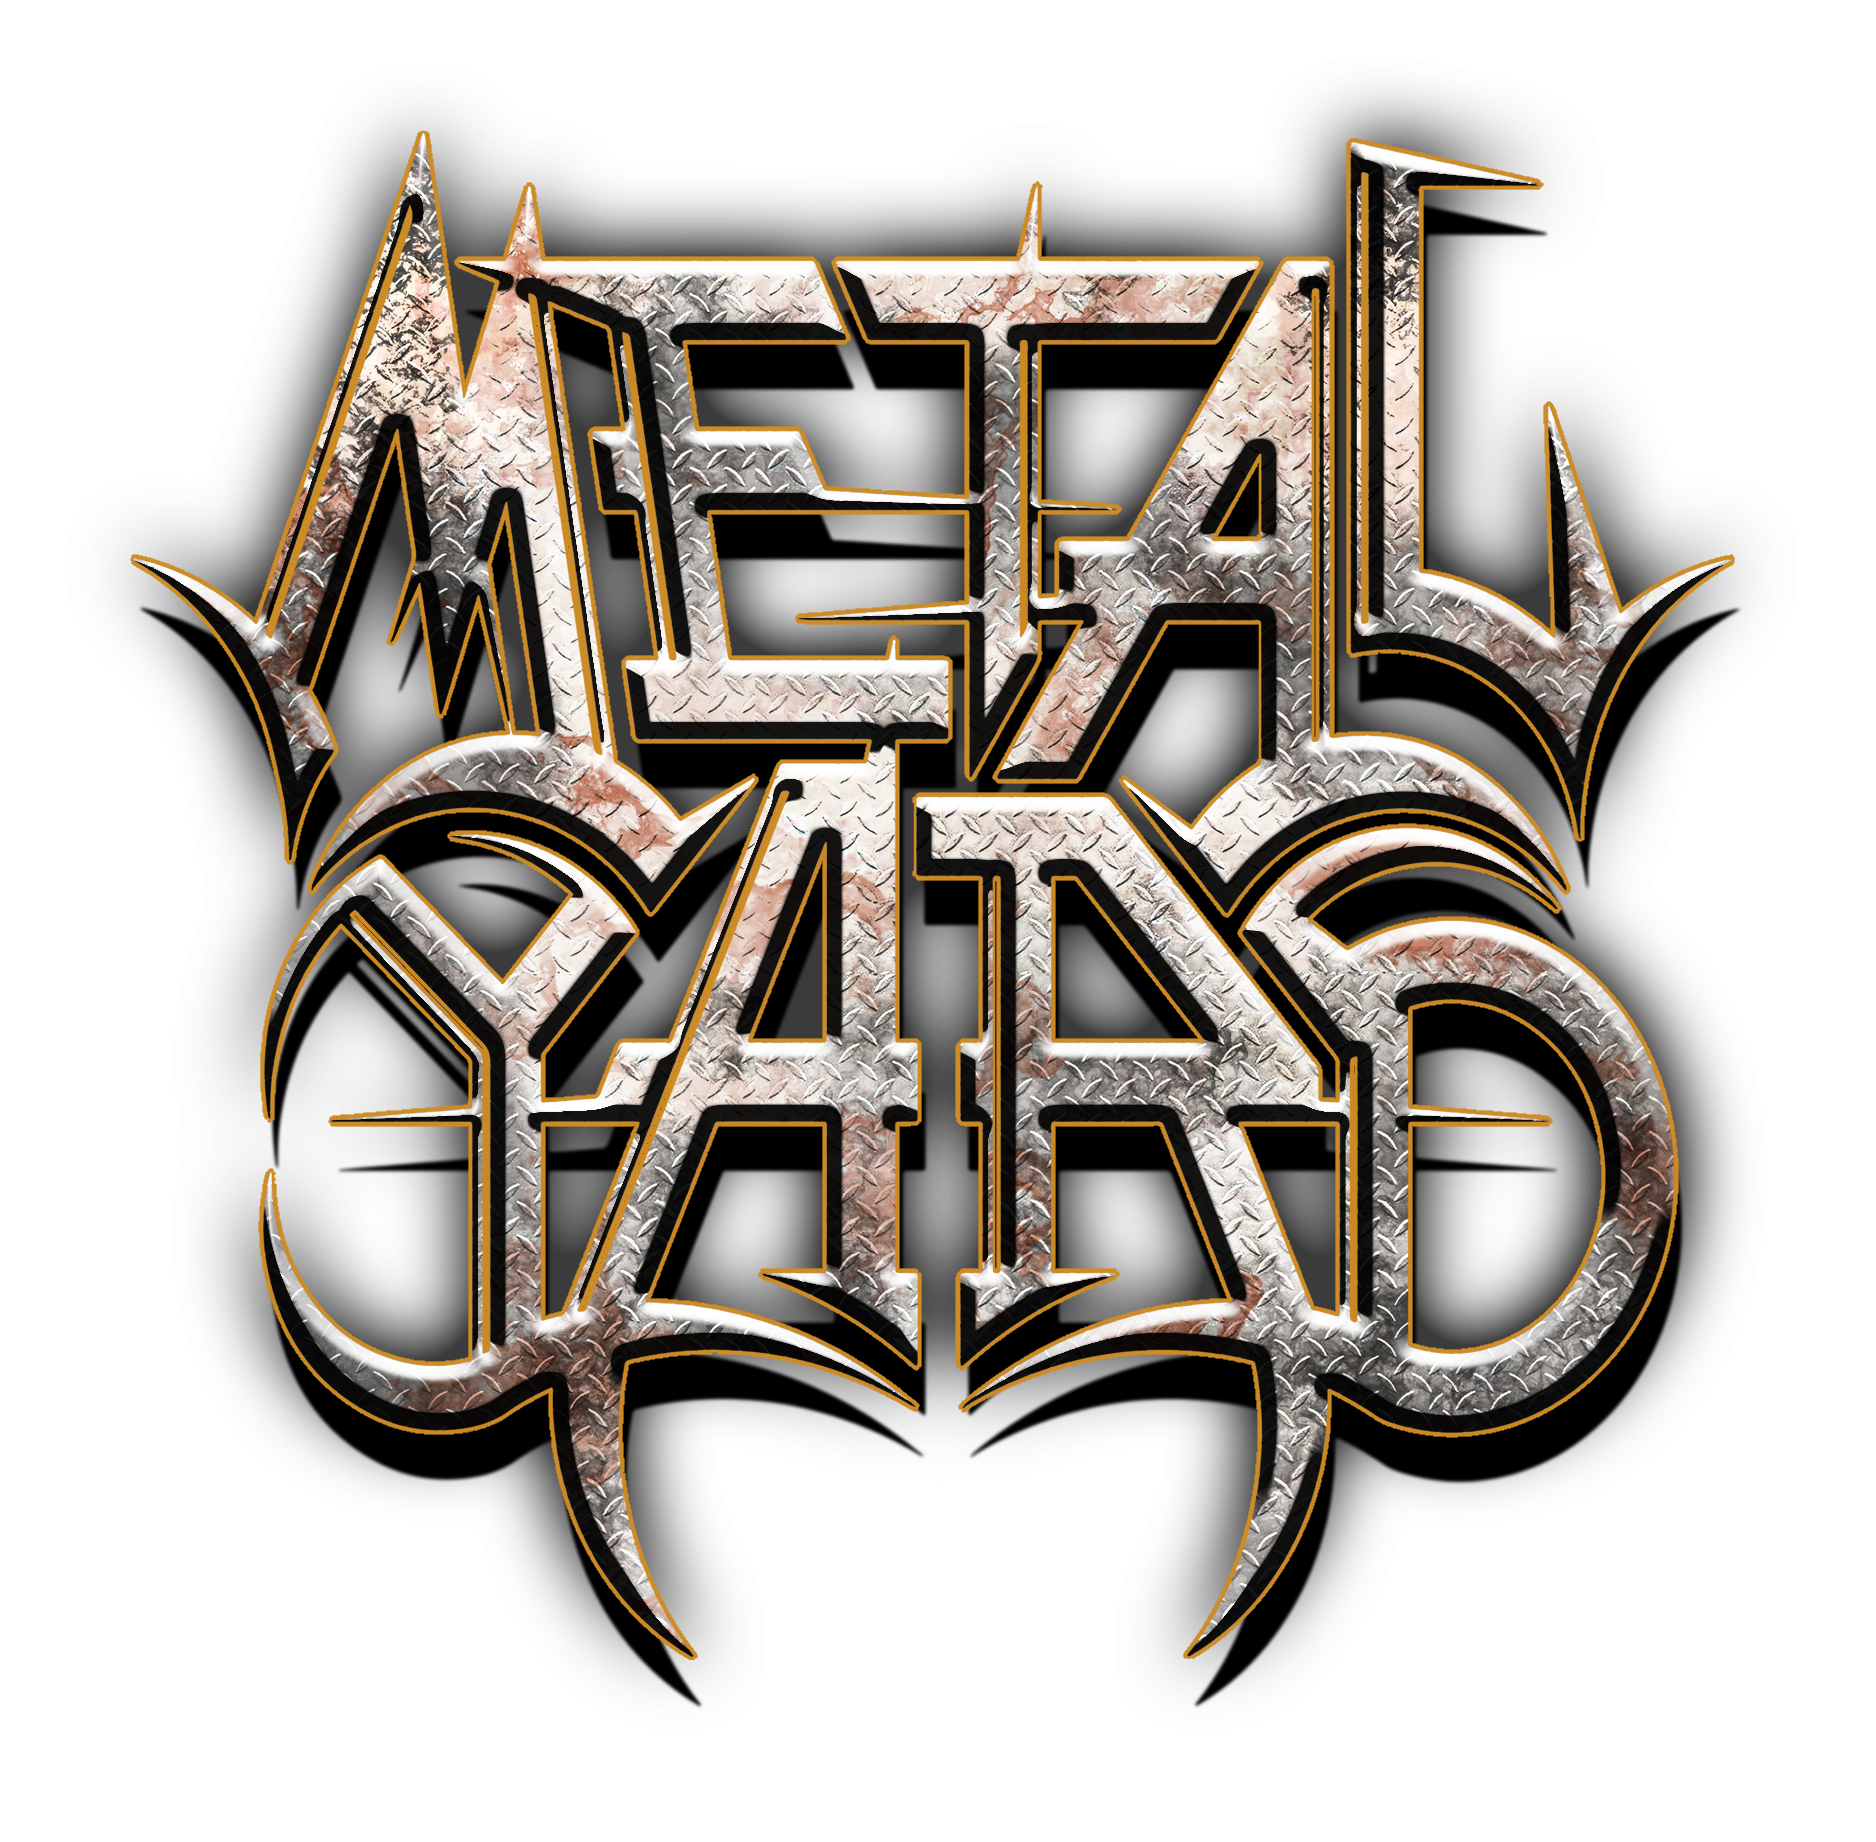 Metalfestival Metalyard